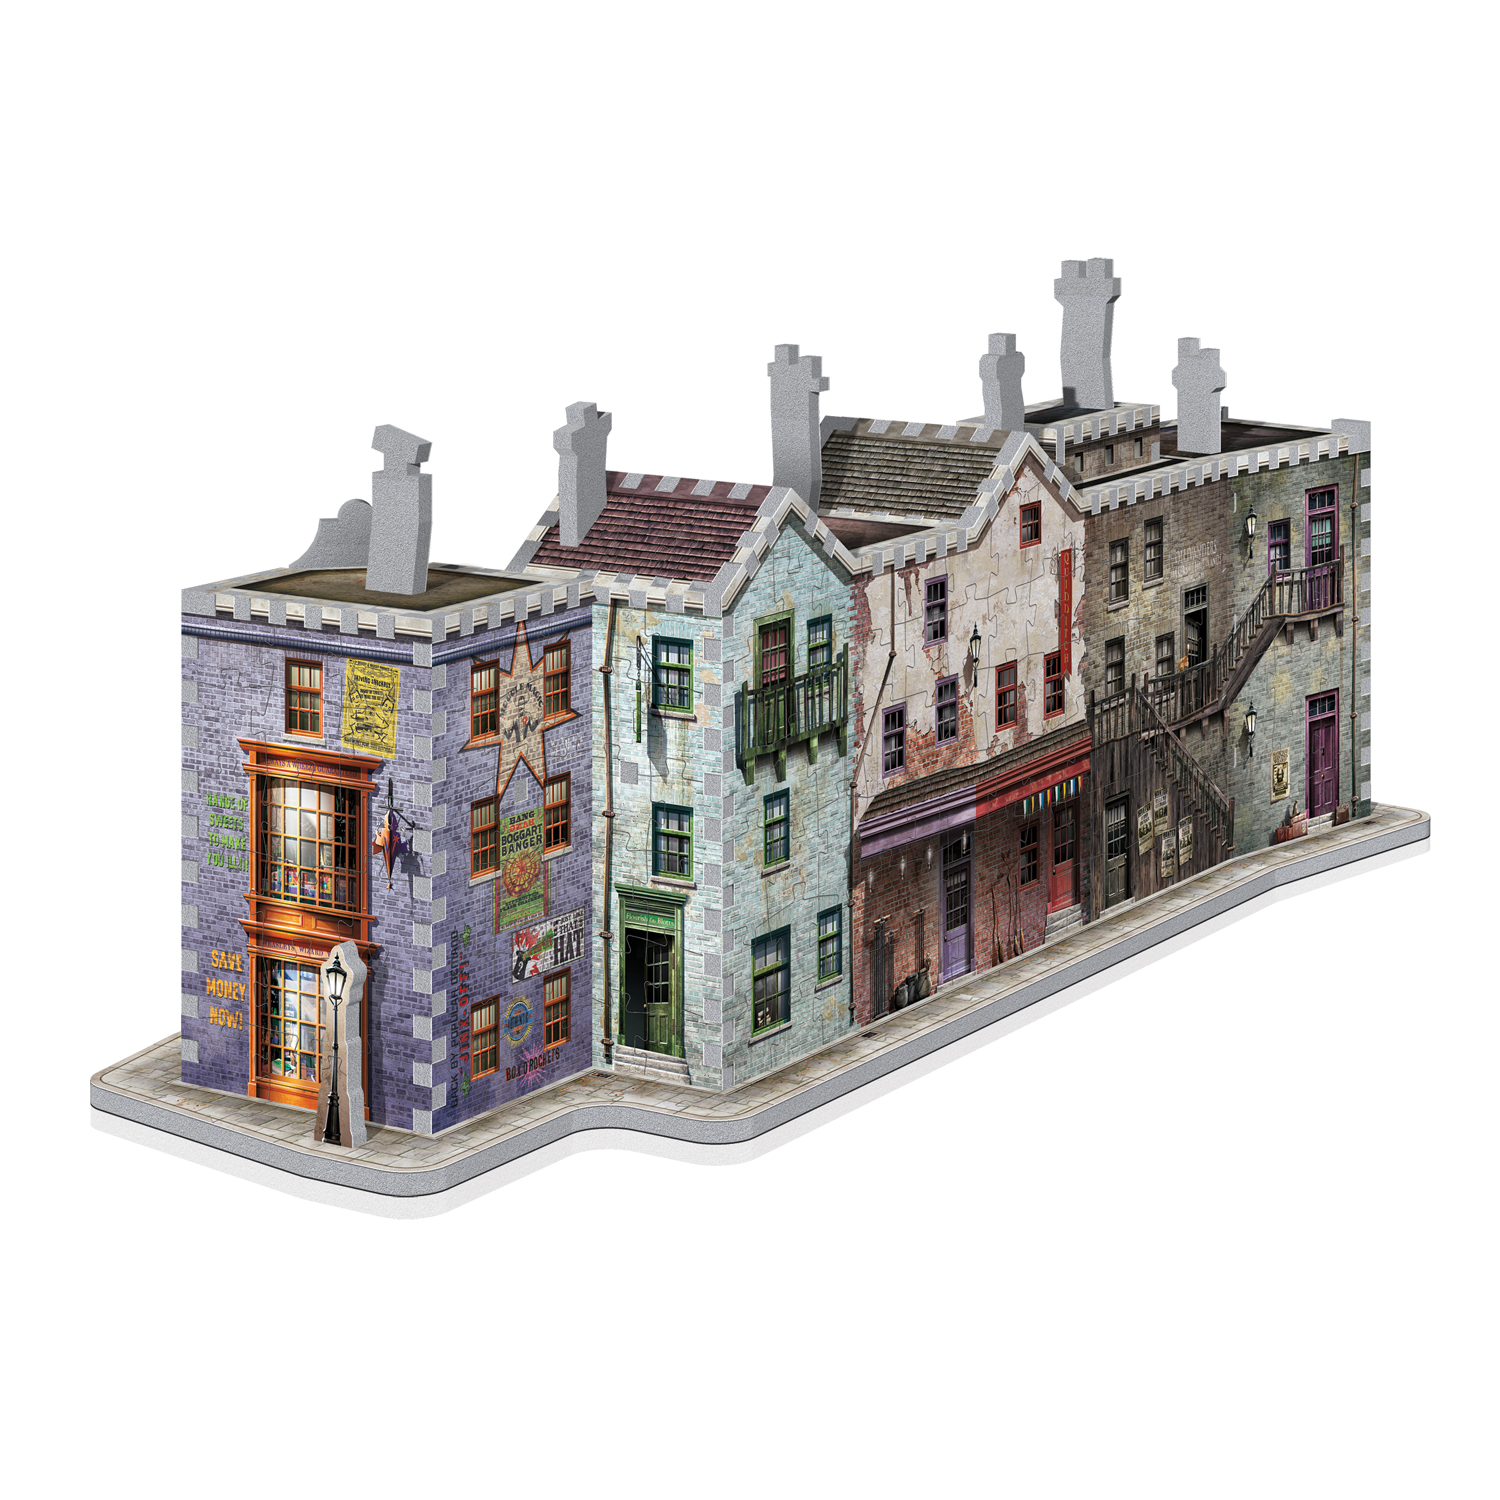 Harry Potter - 3D Puzzle Diagon Alley Set (273 pieces), 39.90 CHF